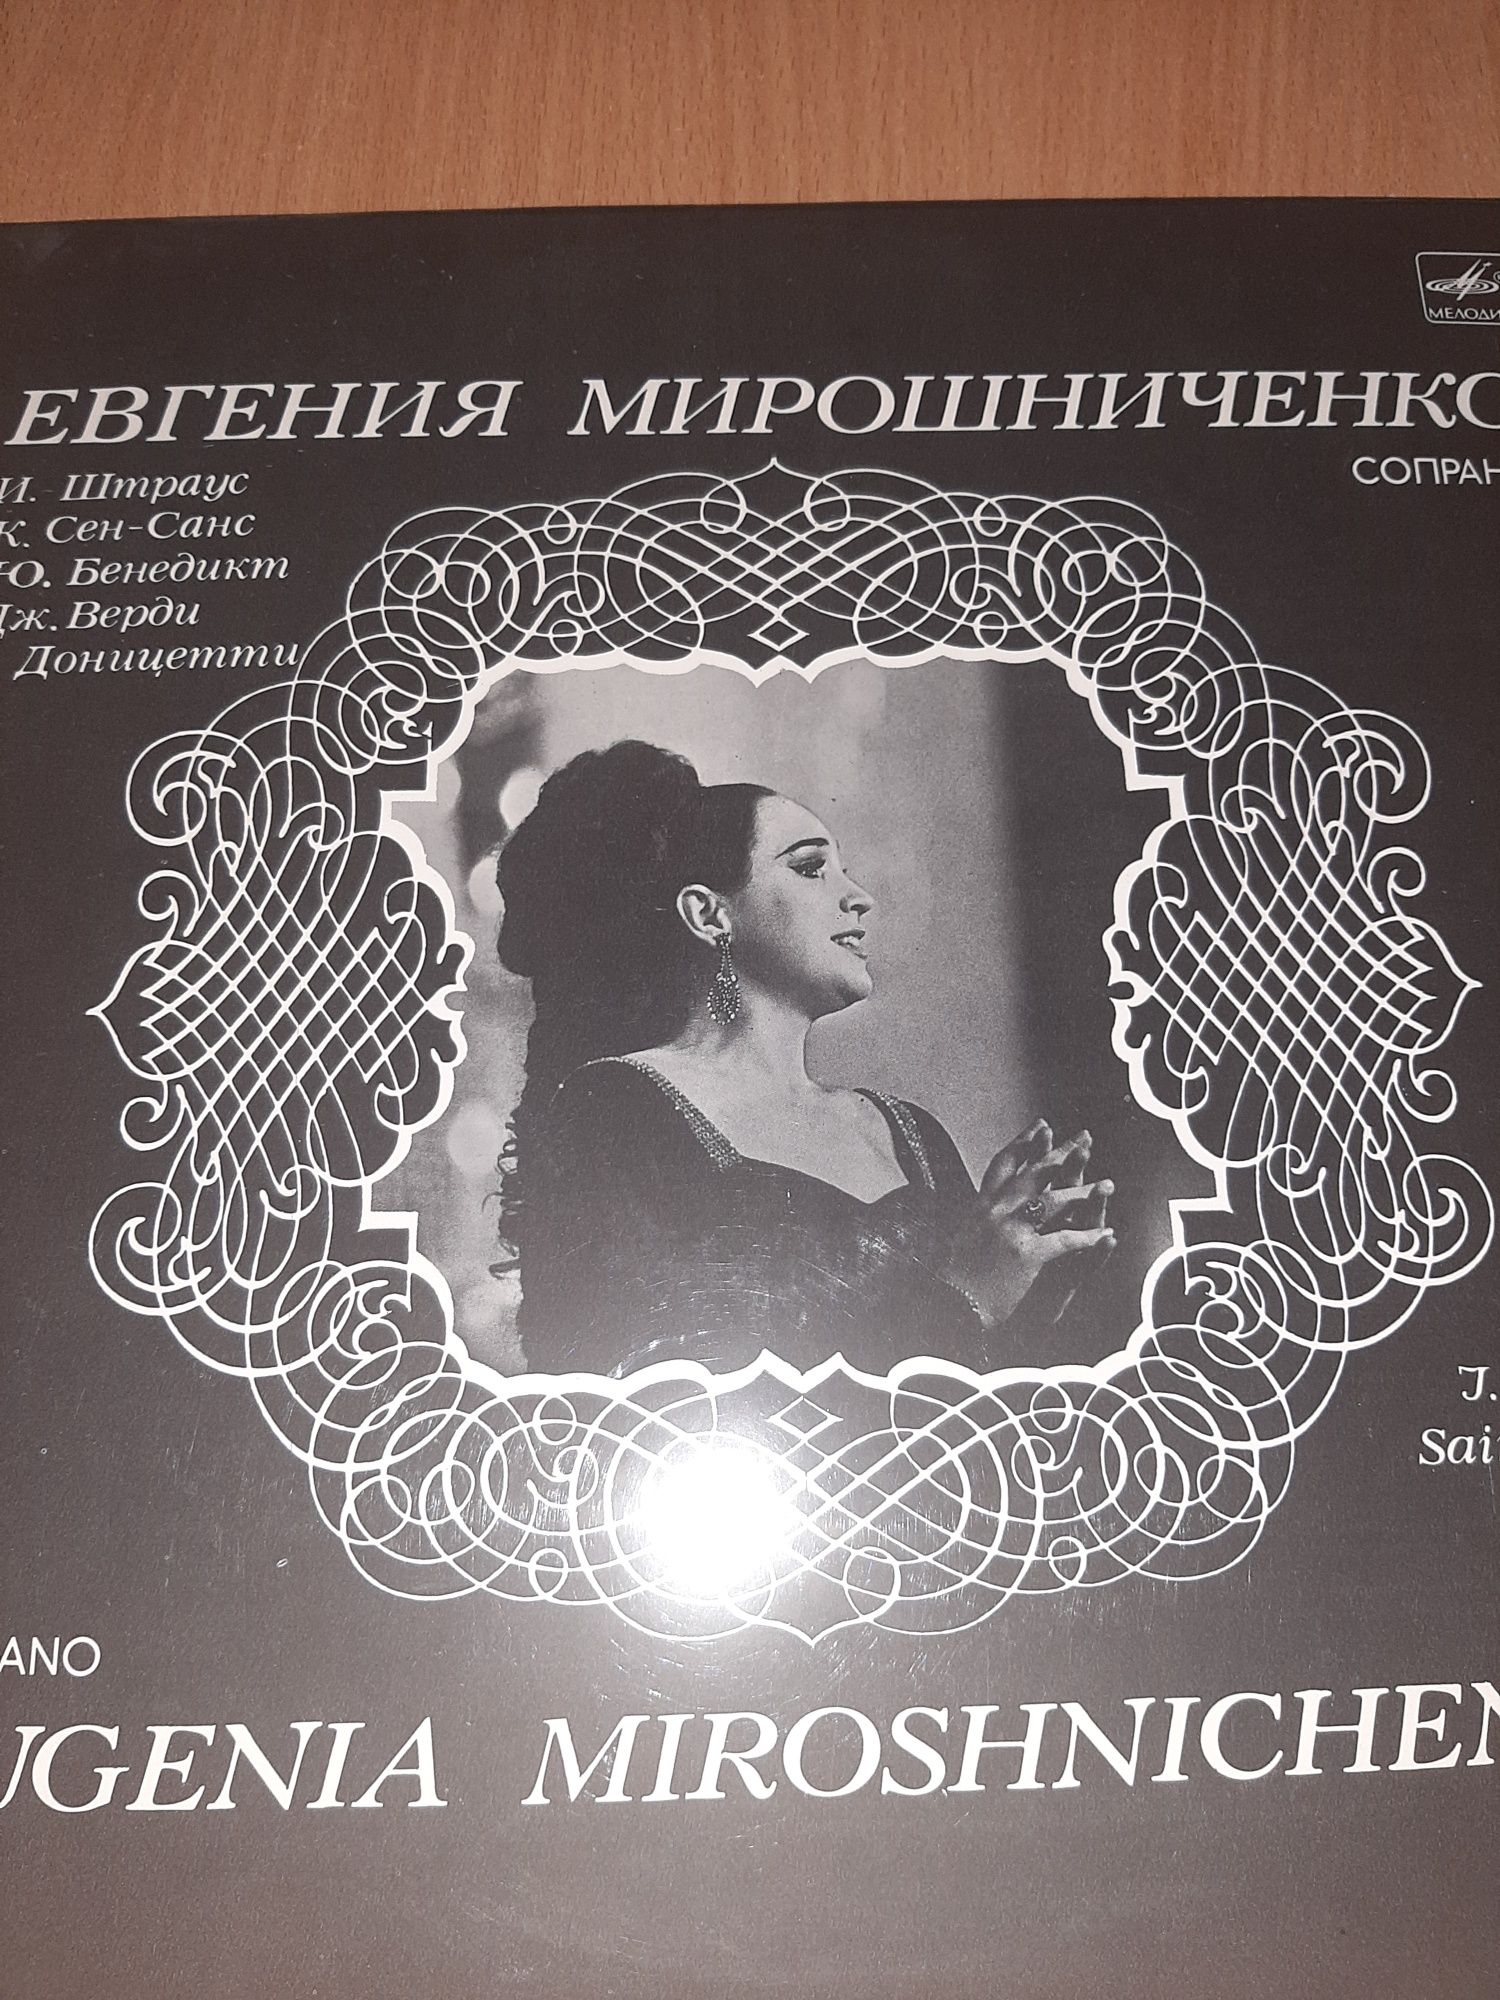 Виниловая пластинка Евгения Мирошенко - сопрано